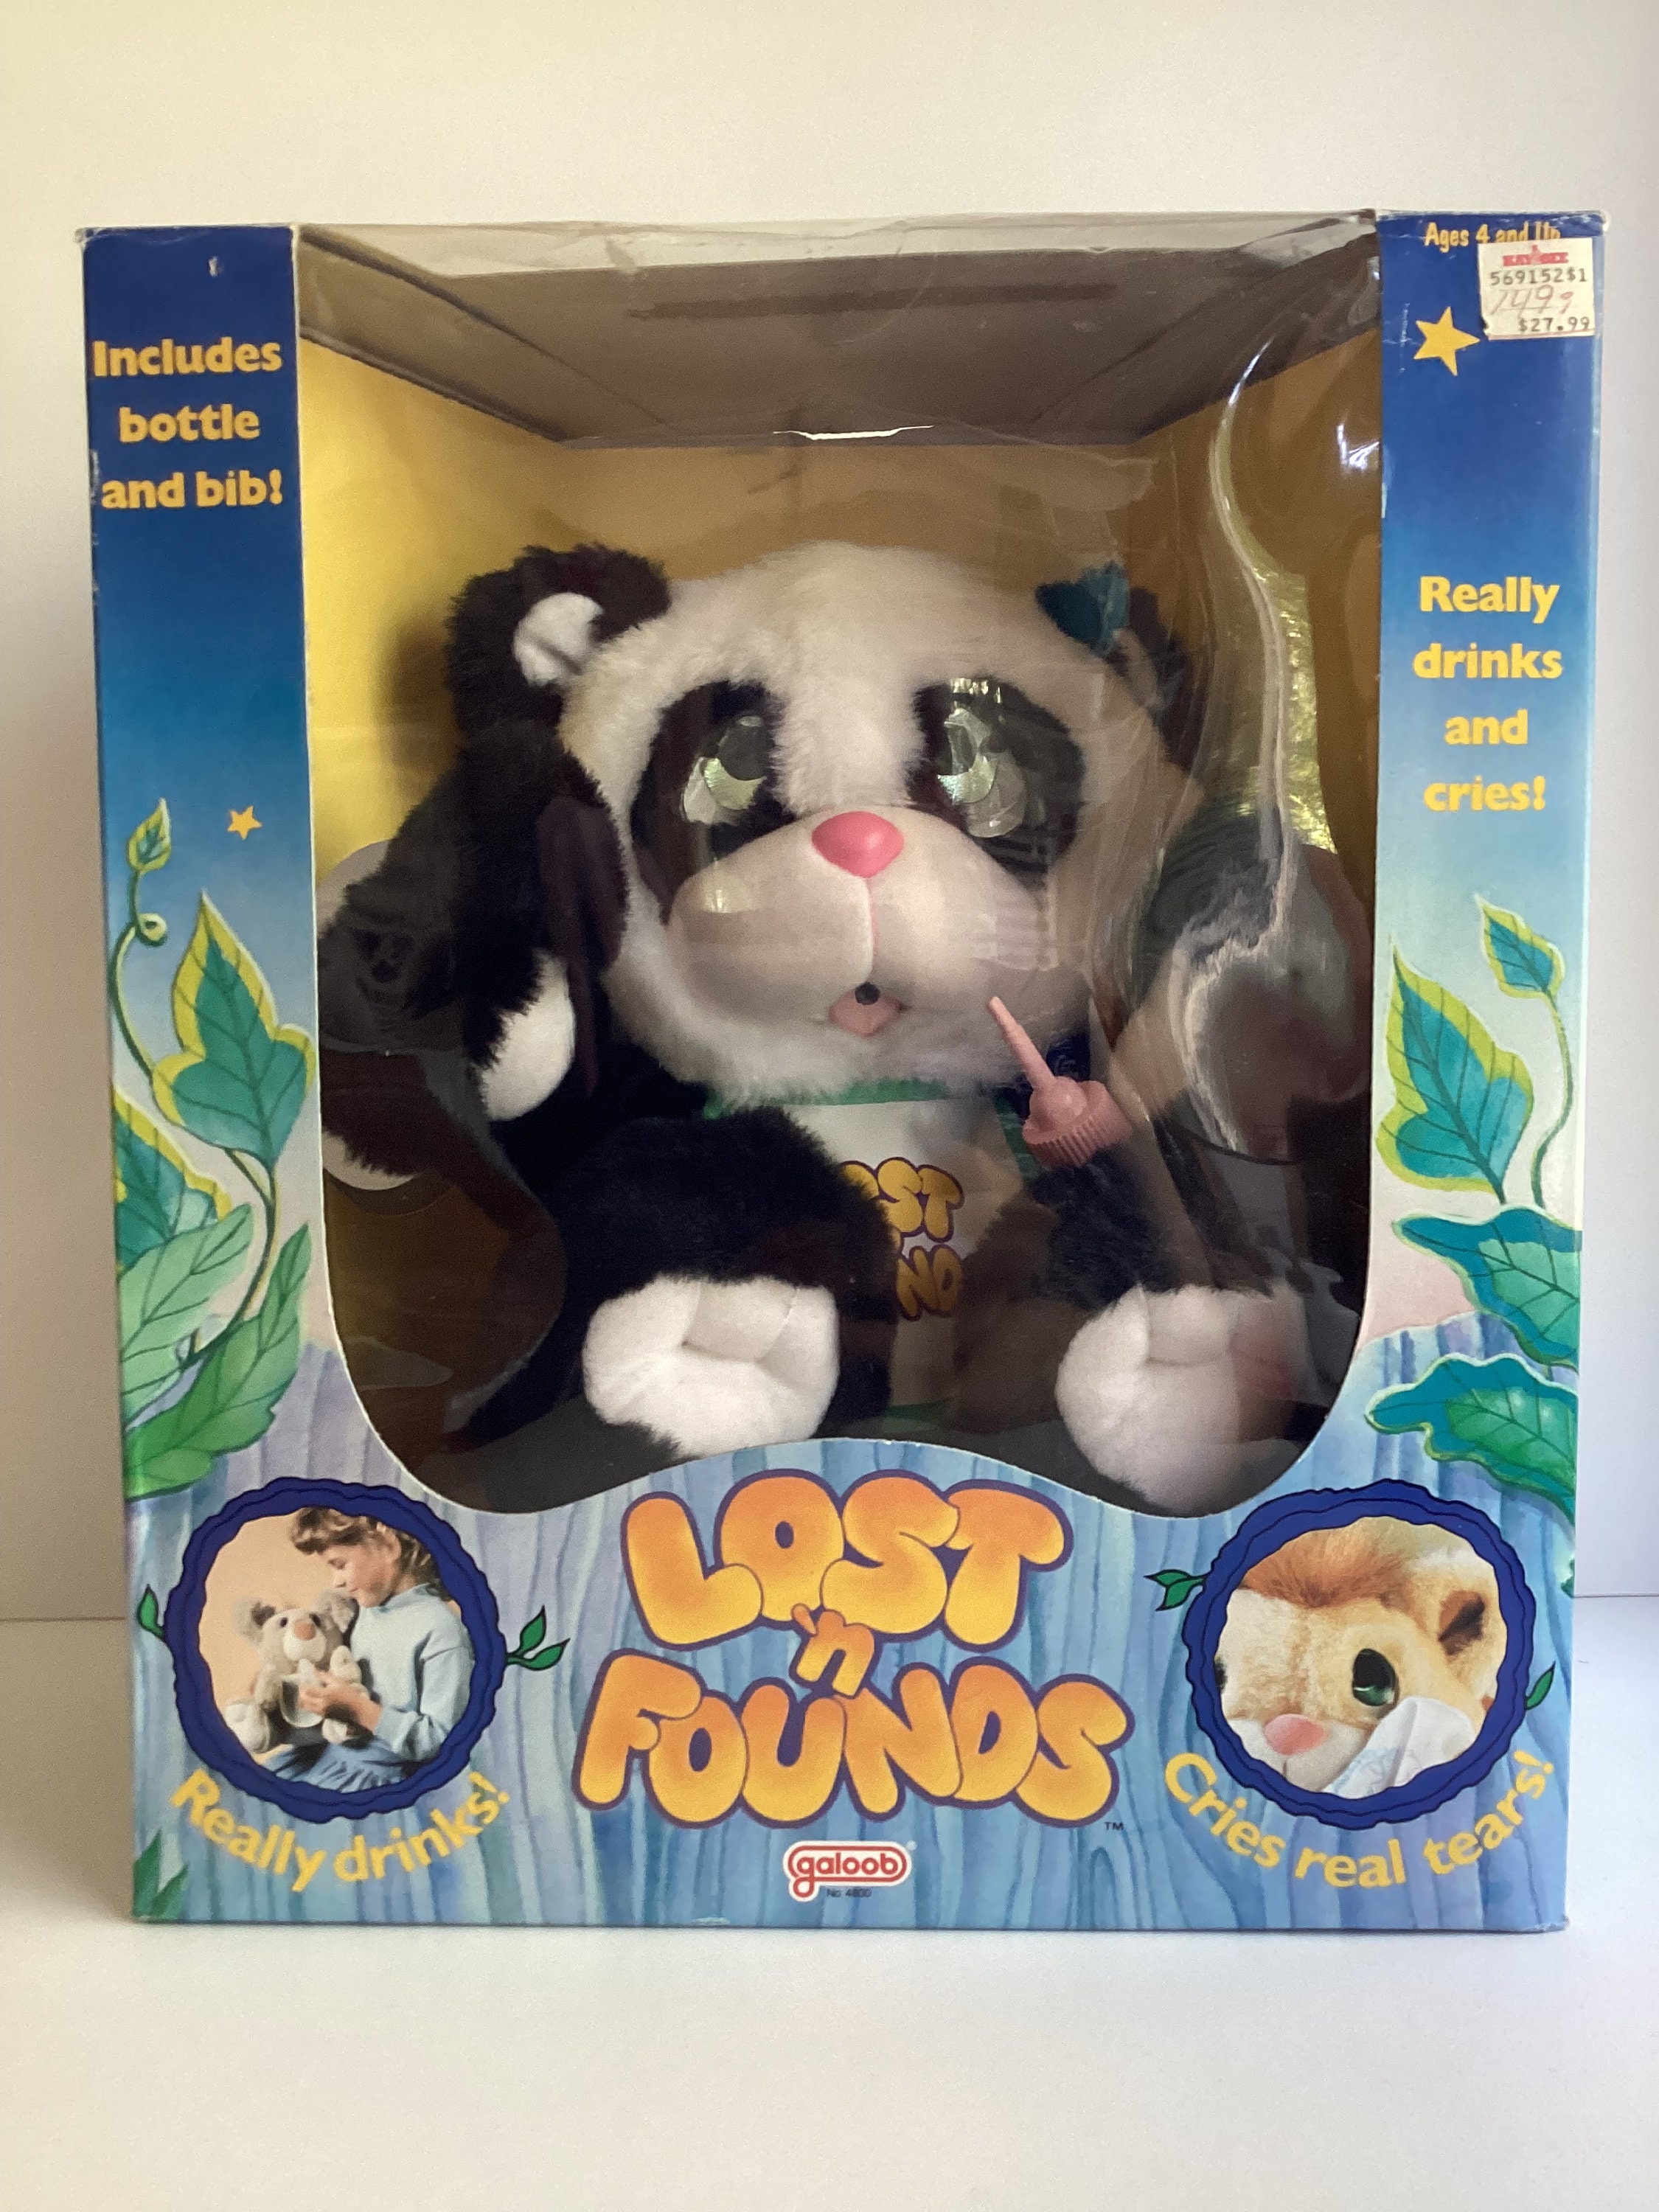 LONGBO Panda Bear Soft Plush Stuffed Animal Toy 4 China ornament